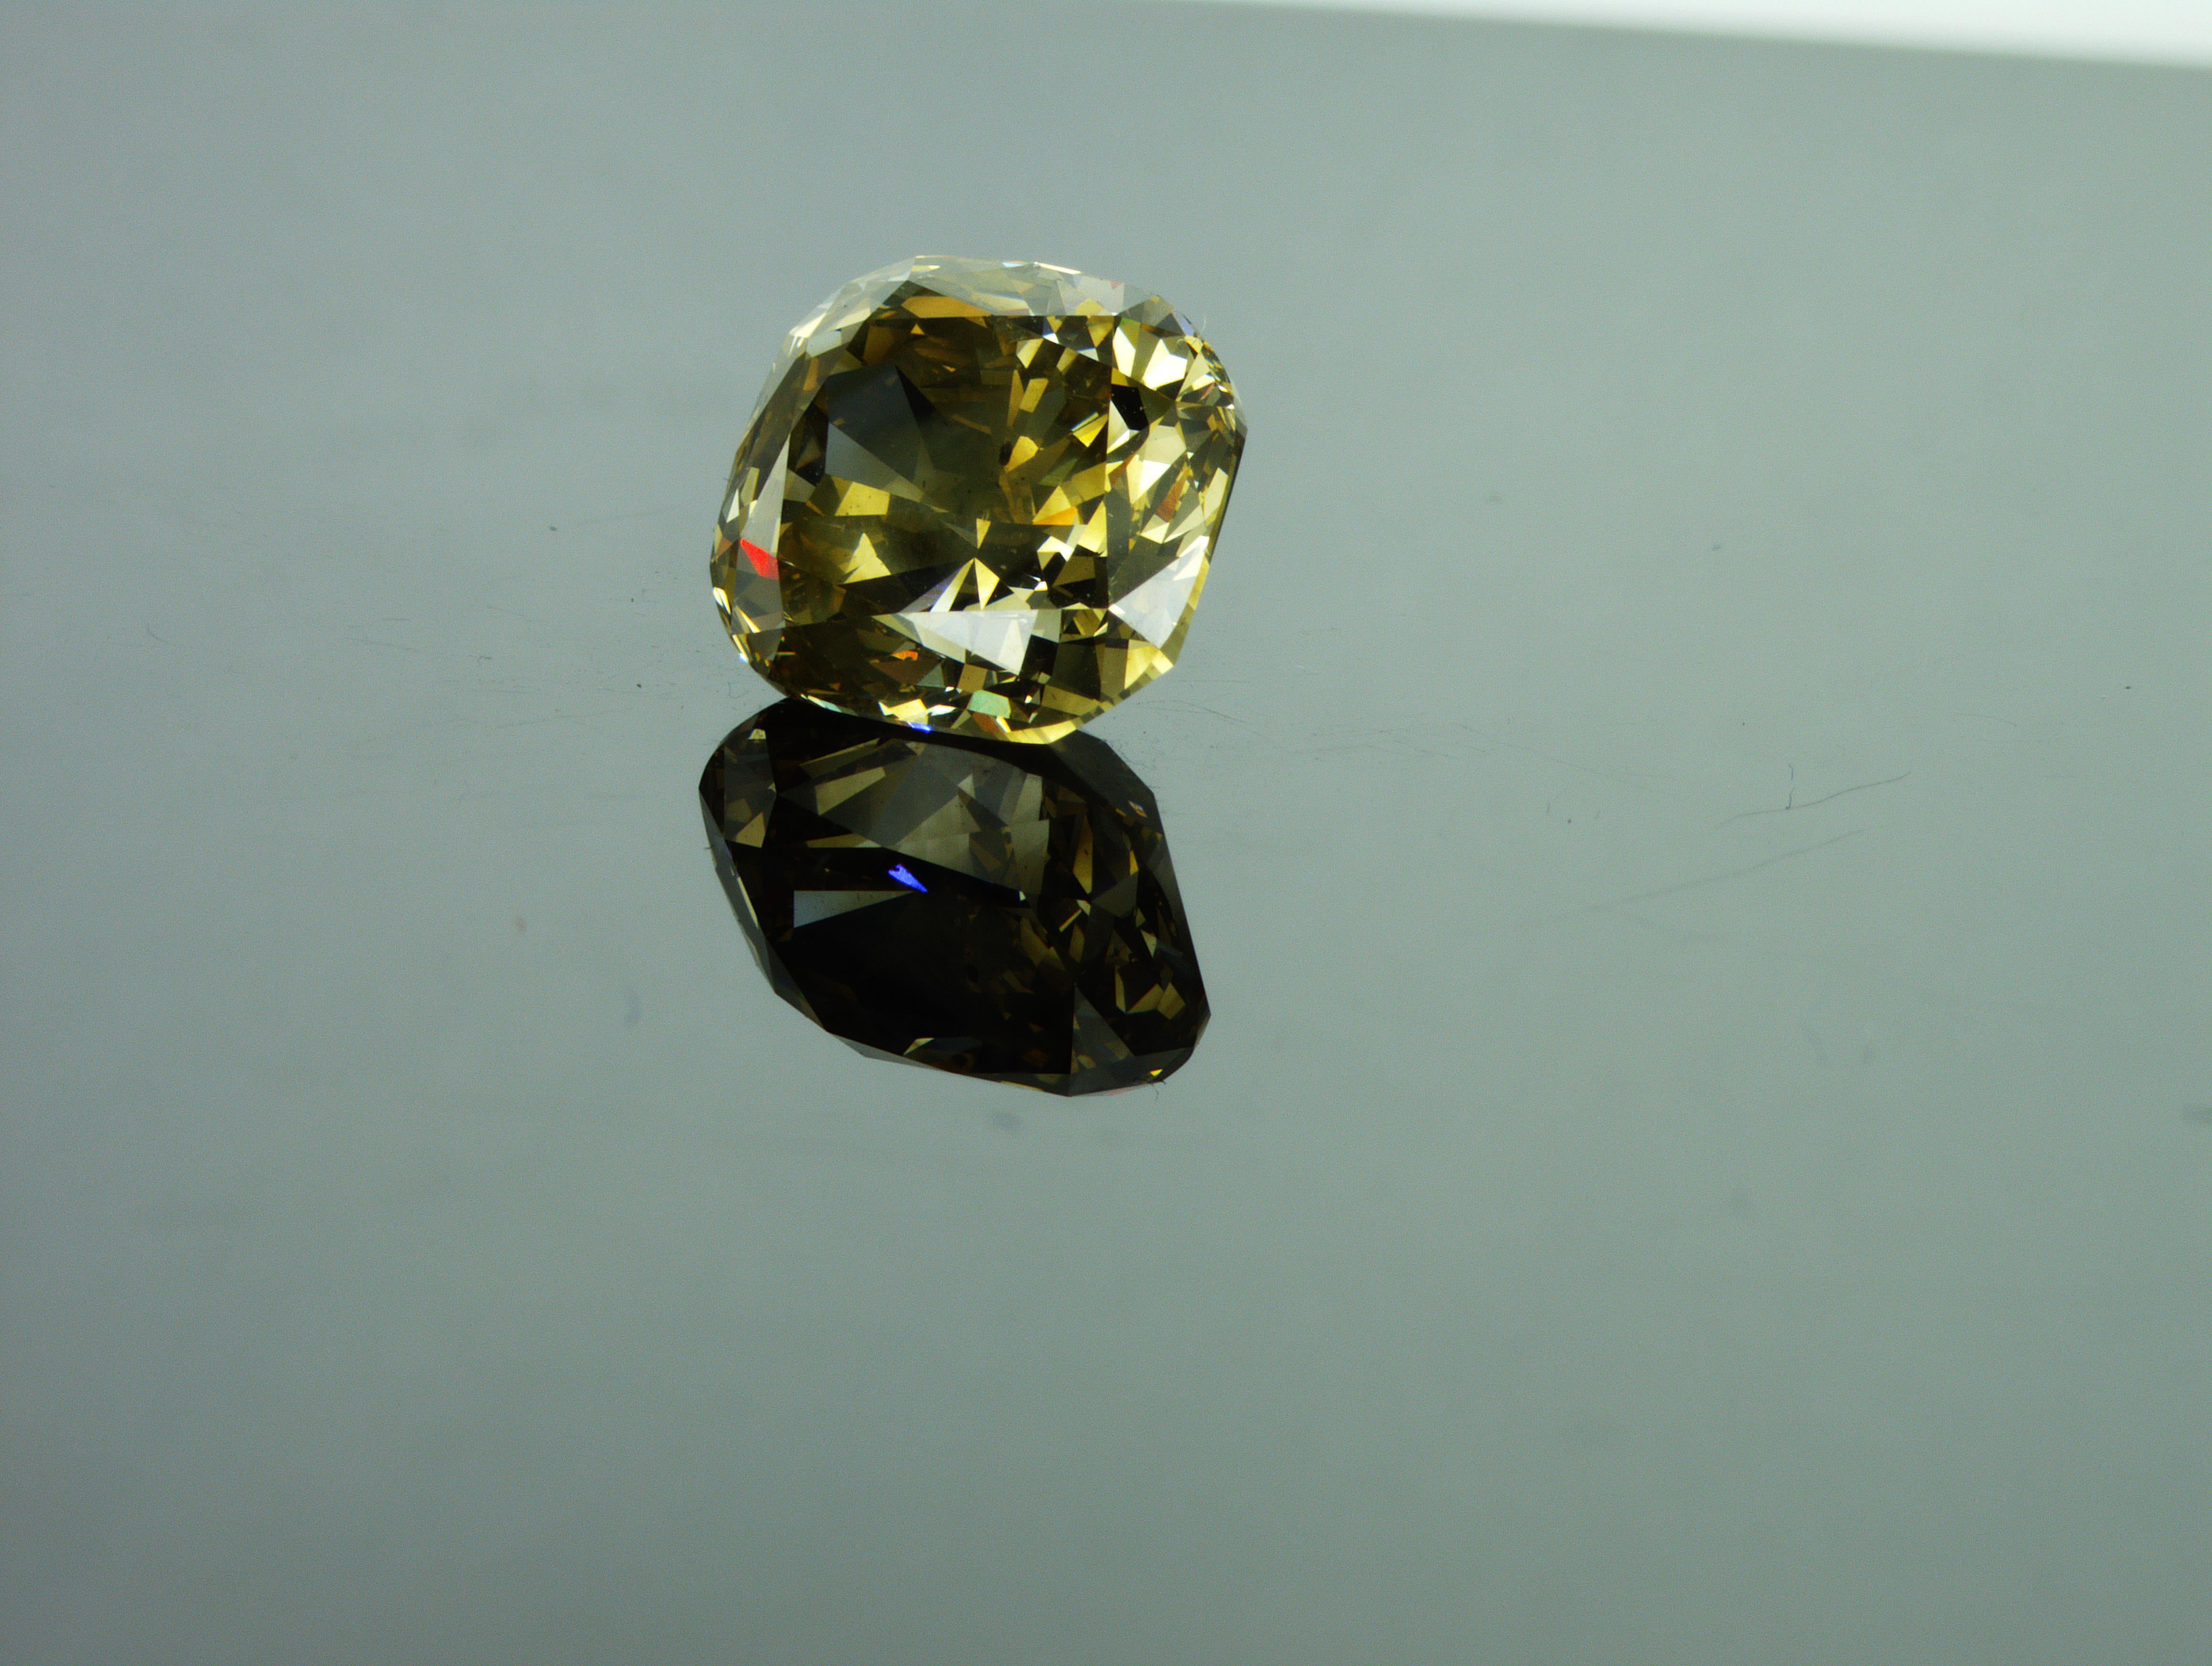 Wir sind ein Unternehmen für die Herstellung von Naturdiamanten mit Sitz in Dubai.
Gewicht: 7,02ct
Die Form: Kissen
Farbe: Braun-Gelb
Intensität: Fancy
Klarheit: I1
Polnisch: Ausgezeichnet
Symm: Gut